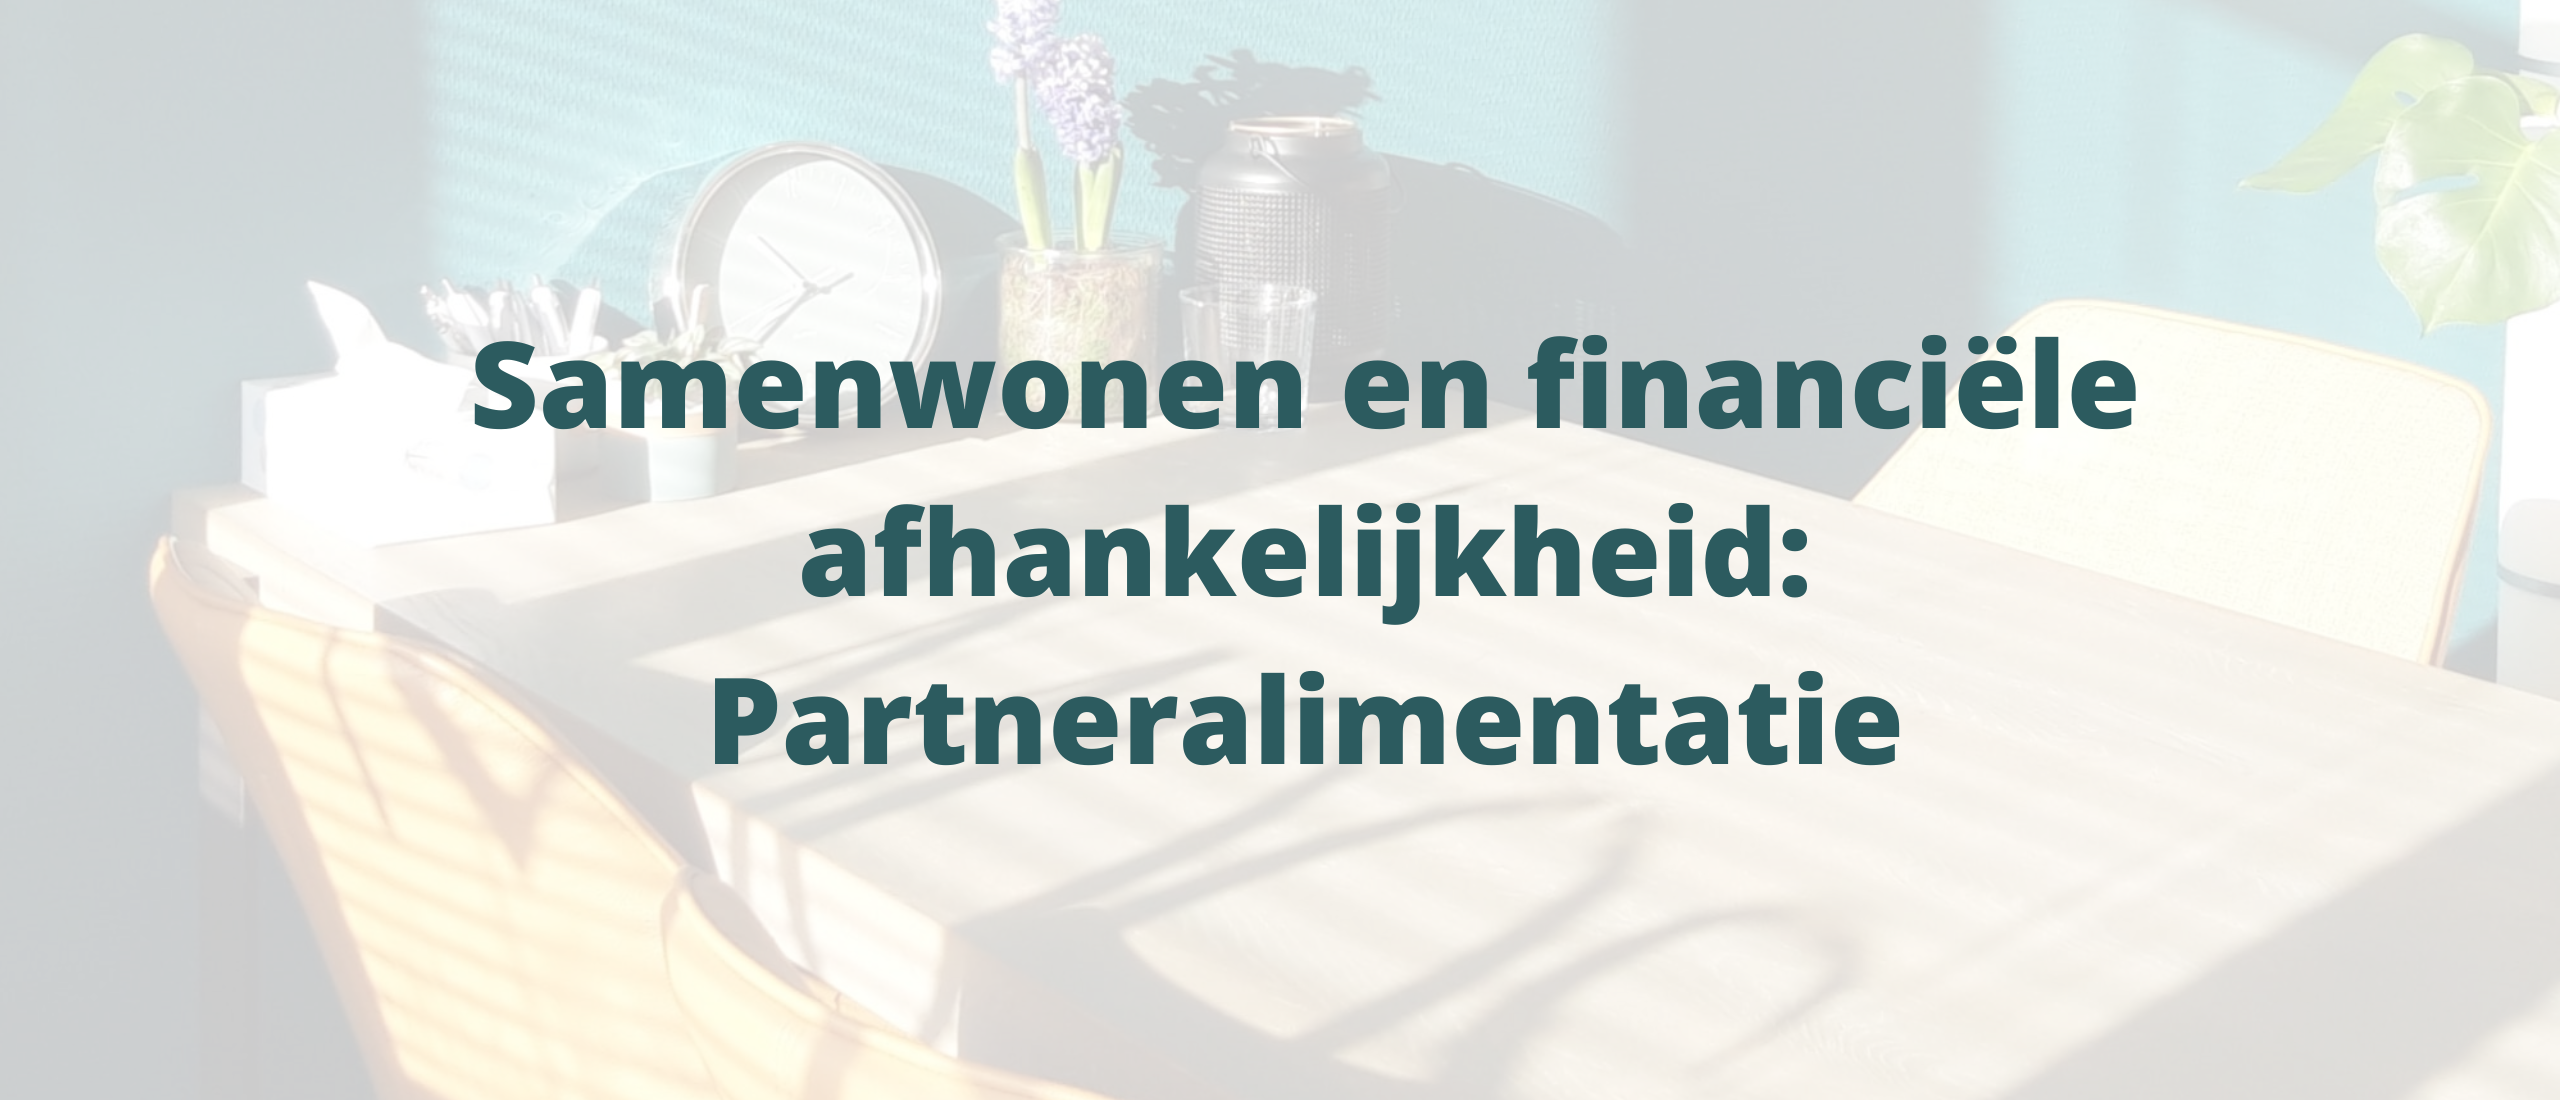 Samenwonen en financiële afhankelijkheid – partneralimentatie